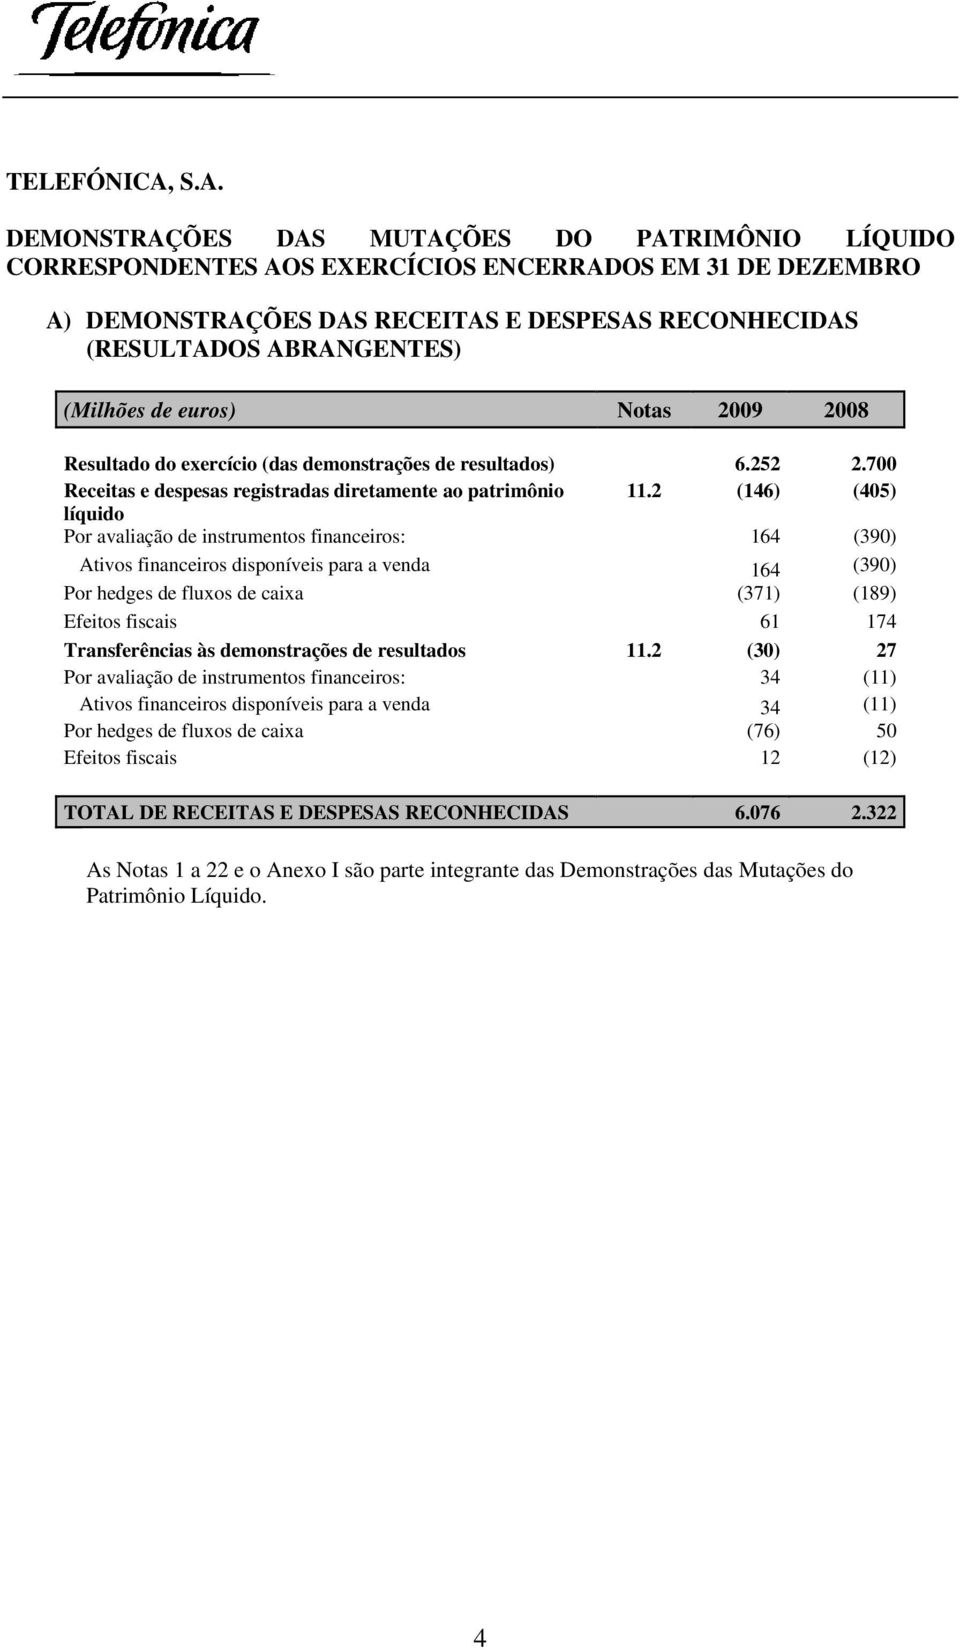 (Milhões de euros) Notas 2009 2008 Resultado do exercício (das demonstrações de resultados) 6.252 2.700 Receitas e despesas registradas diretamente ao patrimônio 11.